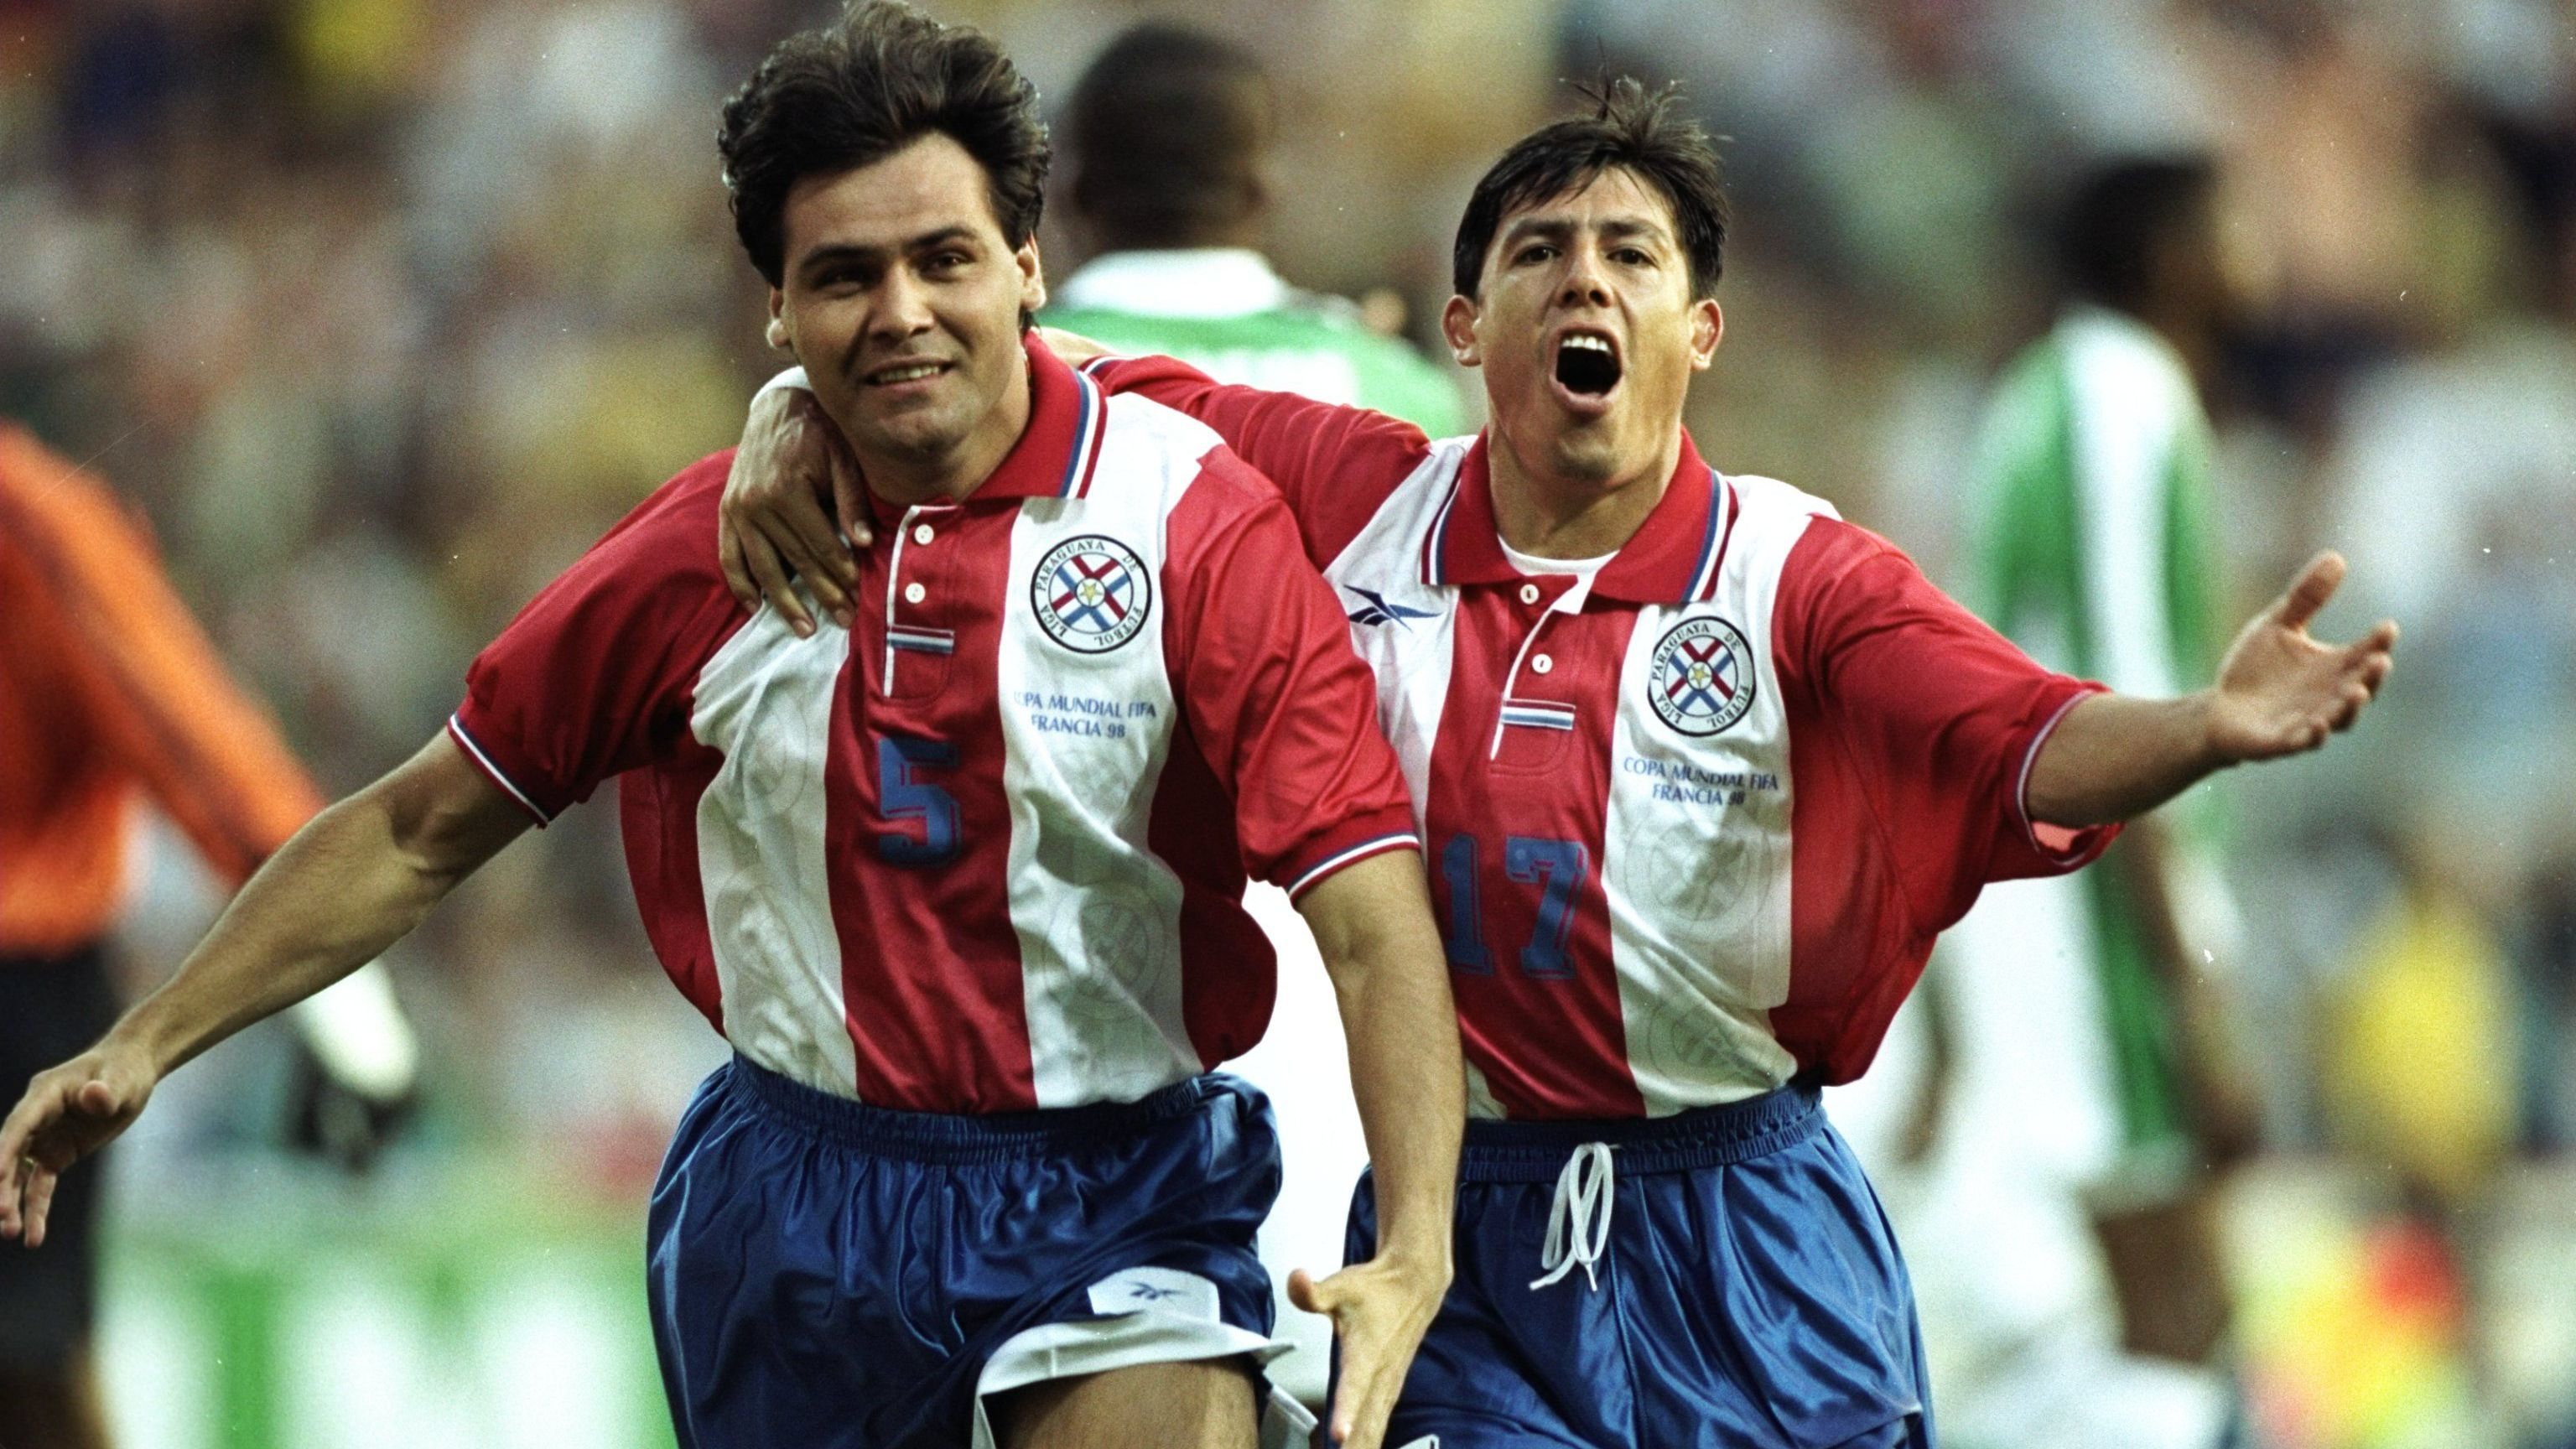 <strong>Platz 21: Celso Ayala (li./Paraguay) - 52 Sekunden</strong><br>Turnier: WM 1998 in Frankreich<br>Spiel: Vorrunde gegen Nigeria 3:1<br>Besonderes: Ayala gehört als Linksverteidiger zu den schnellsten Schützen bei einer WM